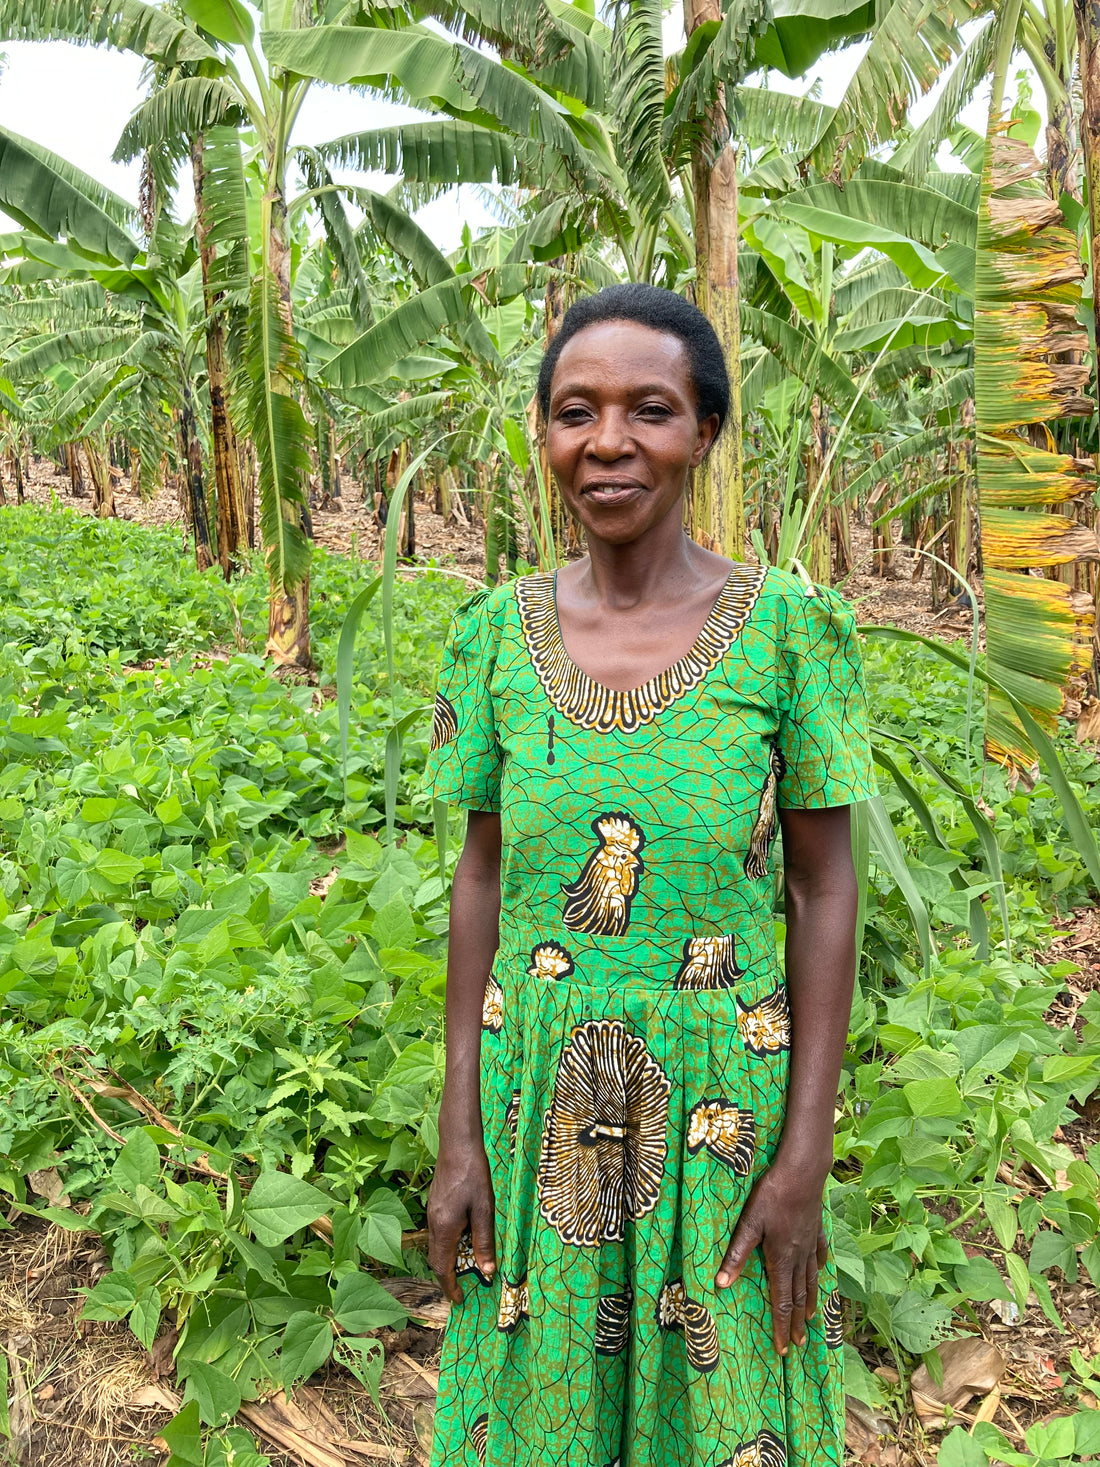 Meet our Farmers: Kellen Ntunguma